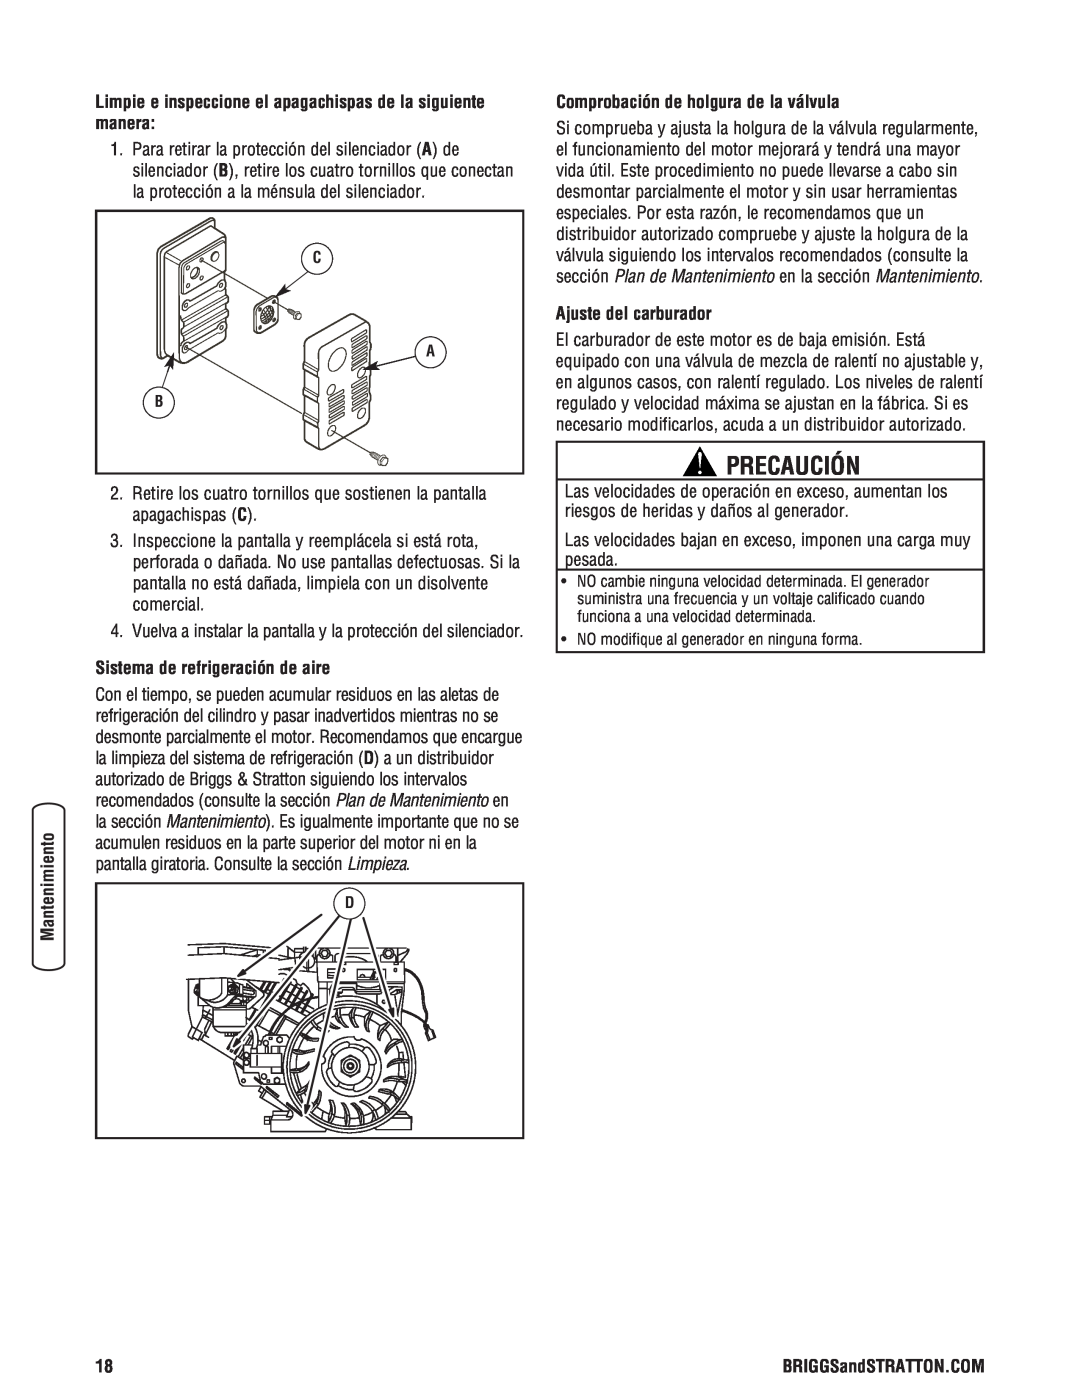 Briggs & Stratton Portable Generator Precaución, Sistema de refrigeración de aire, Comprobación de holgura de la válvula 